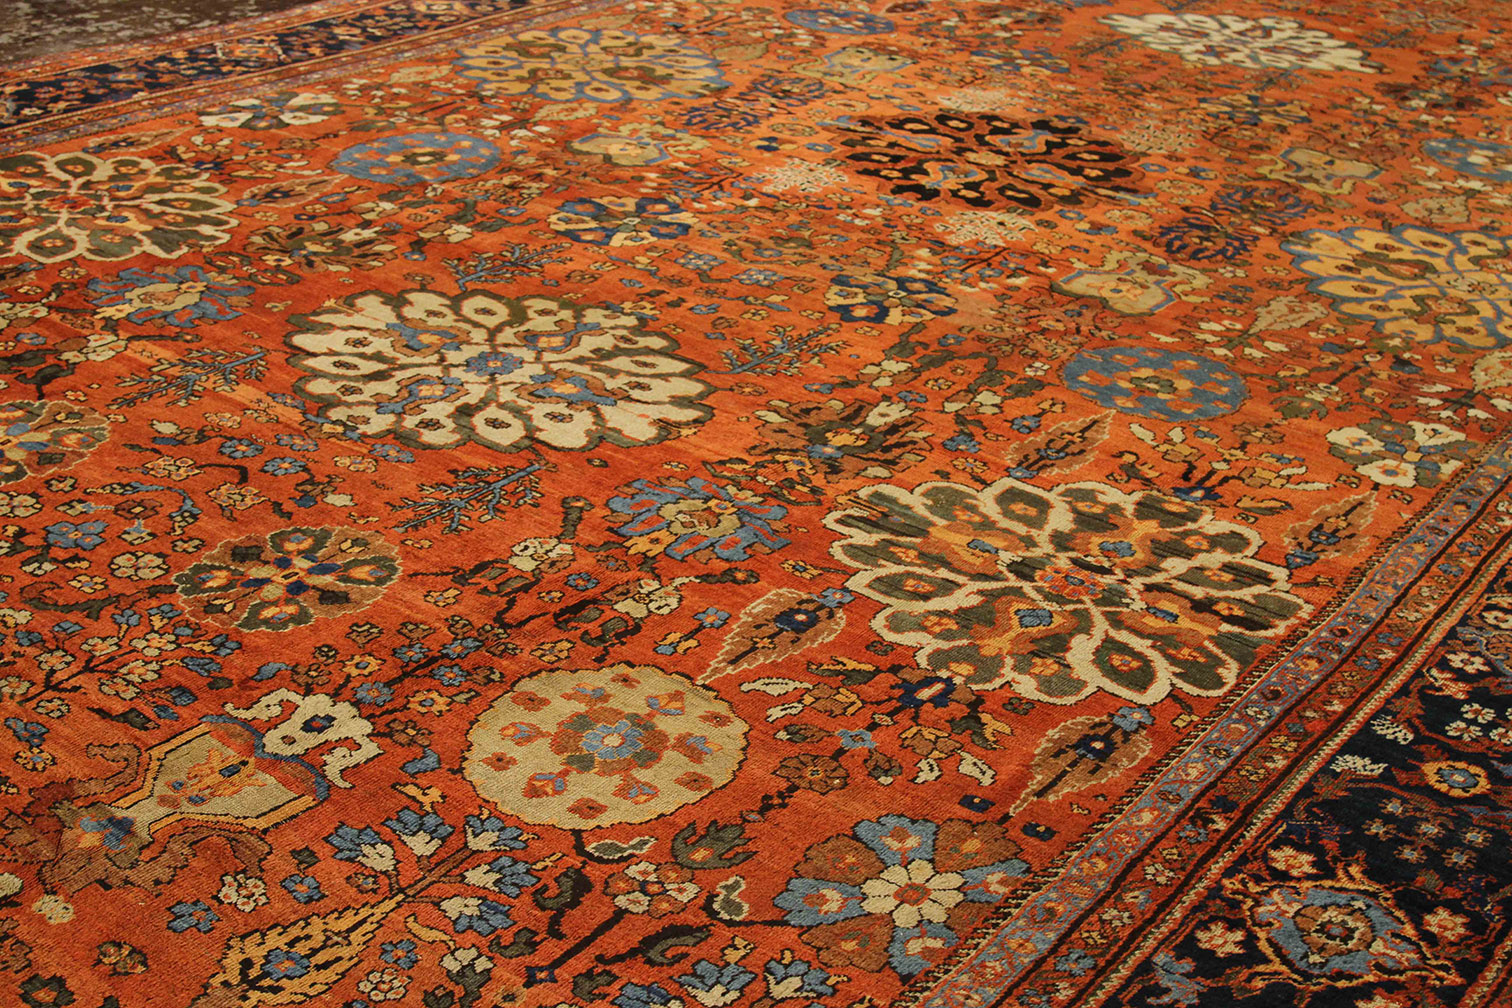 Antique sultan abad Carpet - # 52092